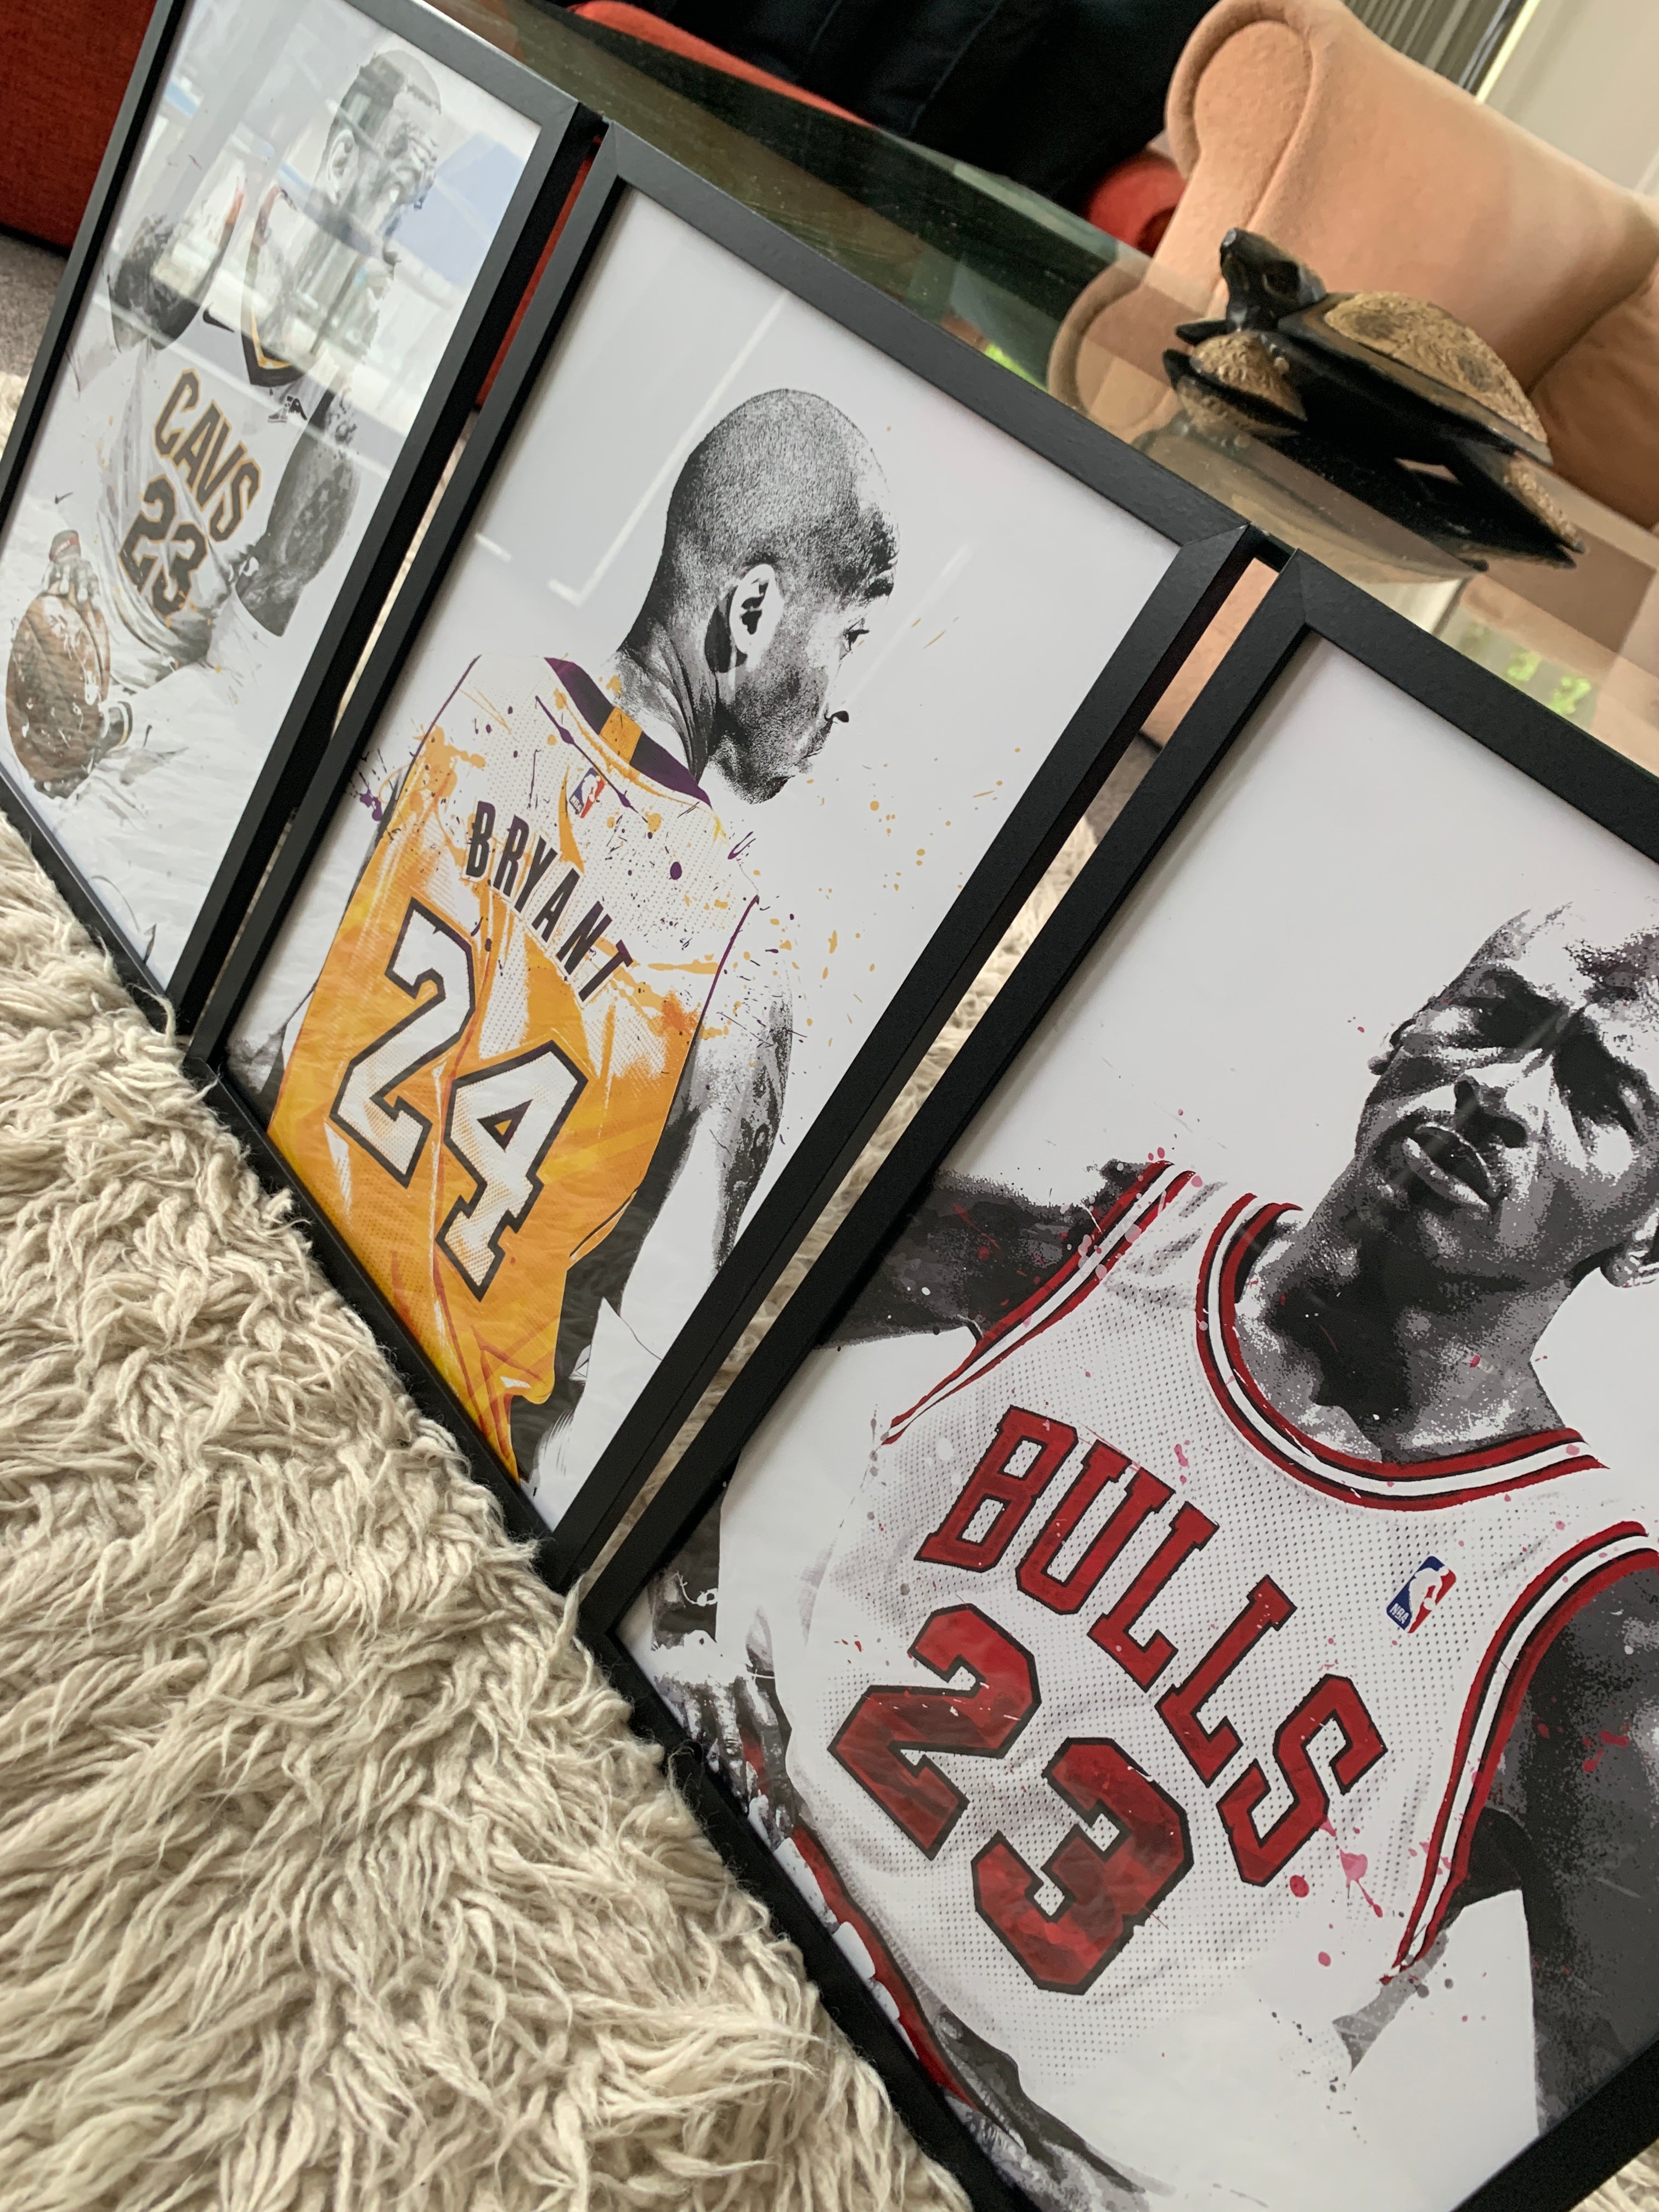 3 x Basketball Legends A3 Framed Art Posters - Poster Prints NZ